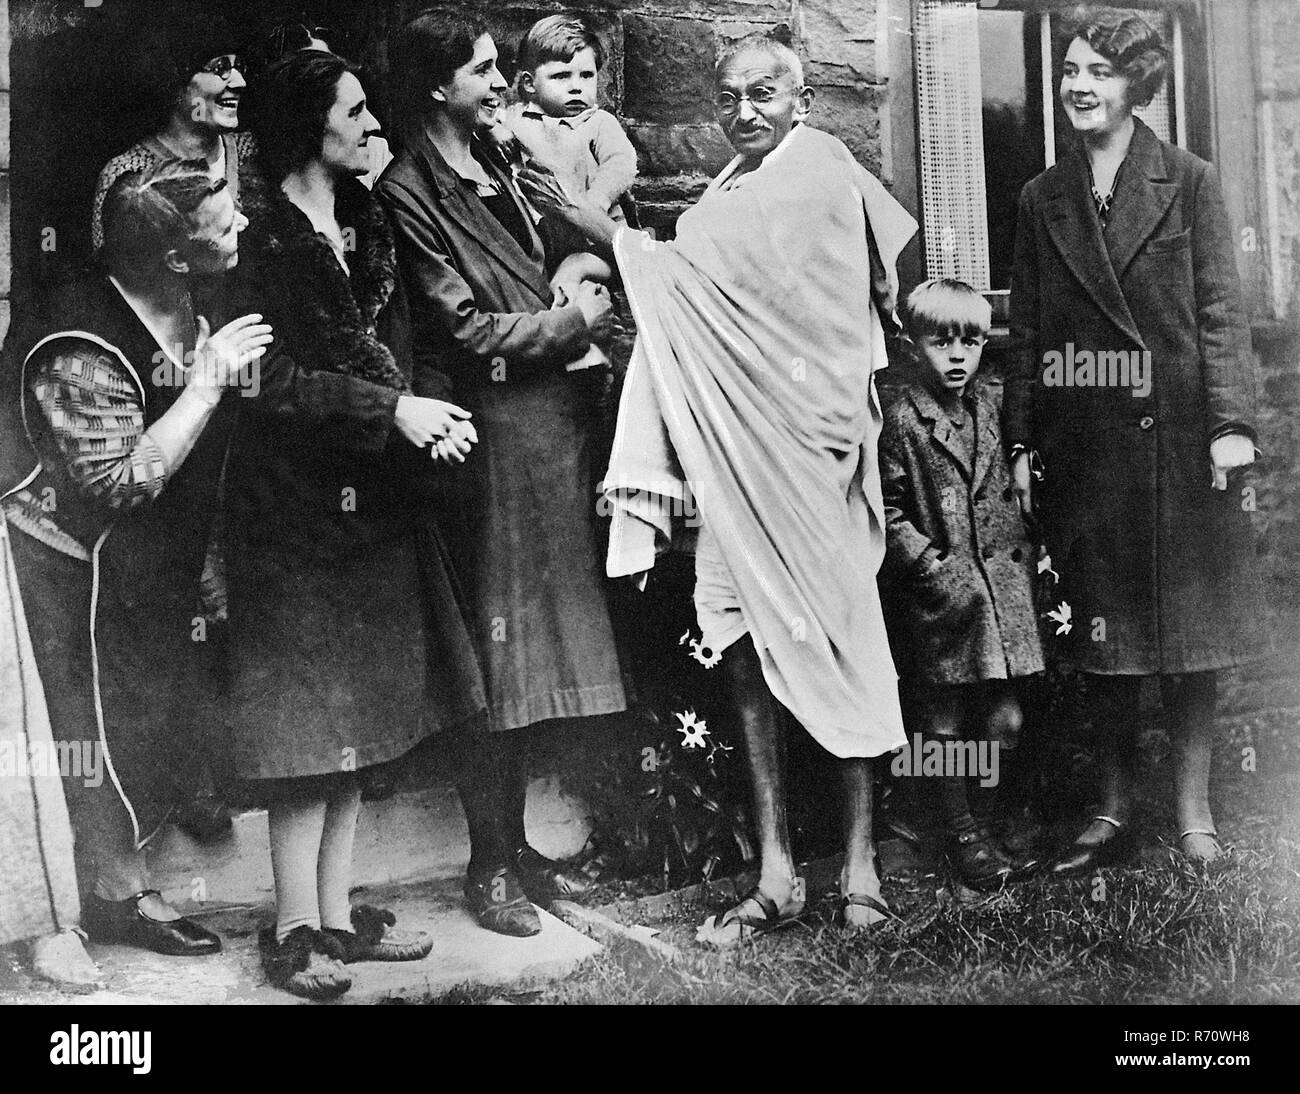 Mahatma Gandhi Young Banque d'image et photos - Alamy